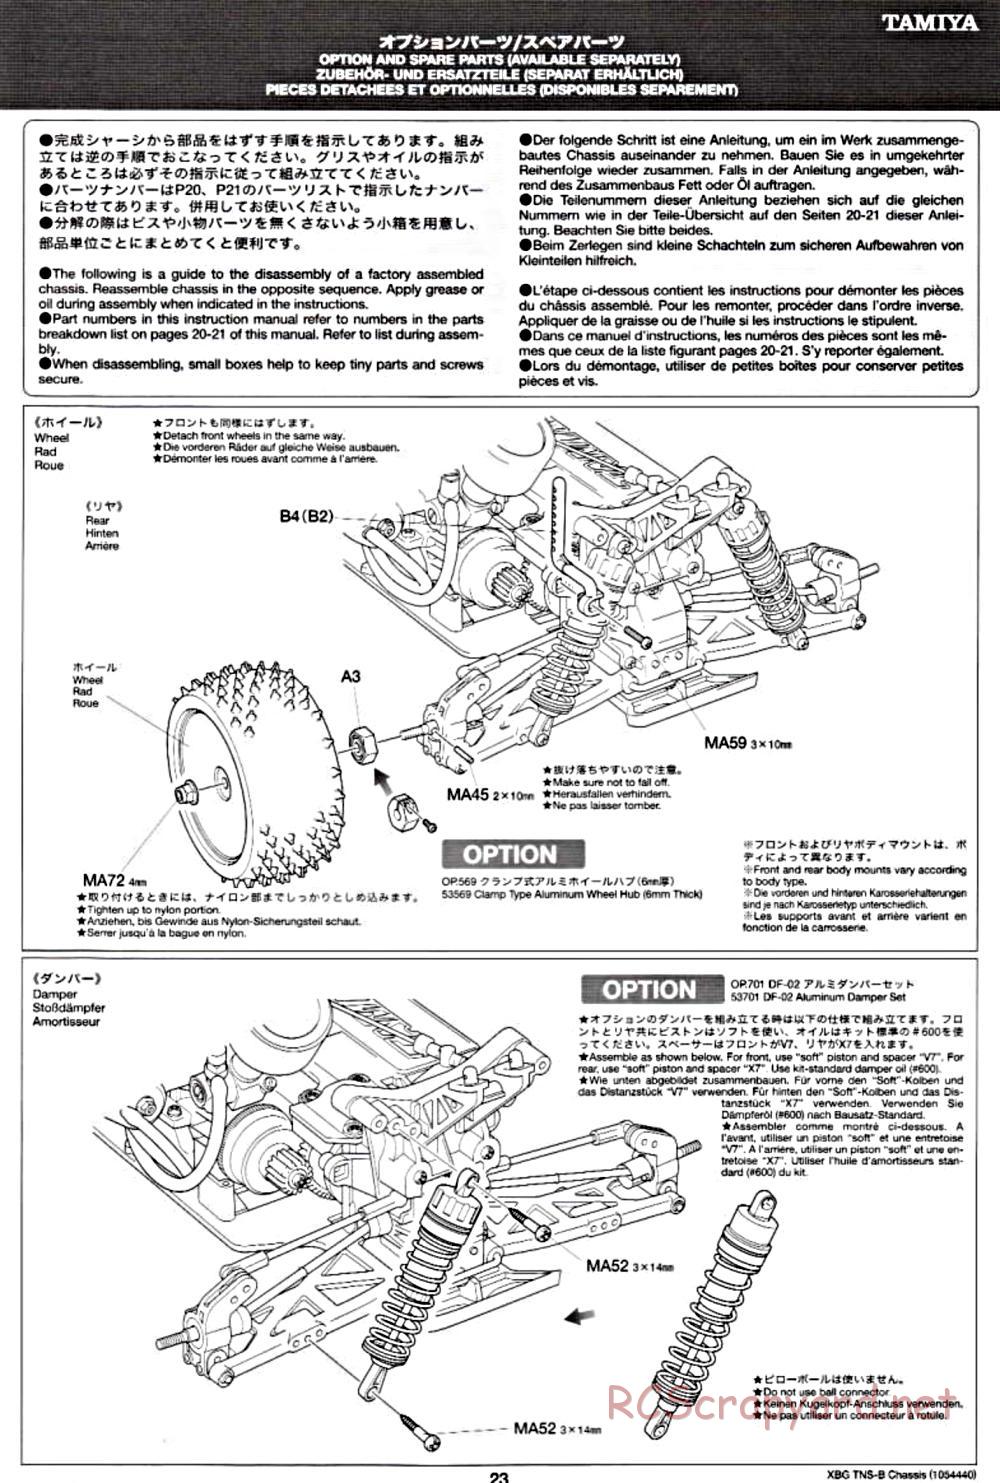 Tamiya - TNS-B Chassis - Manual - Page 23